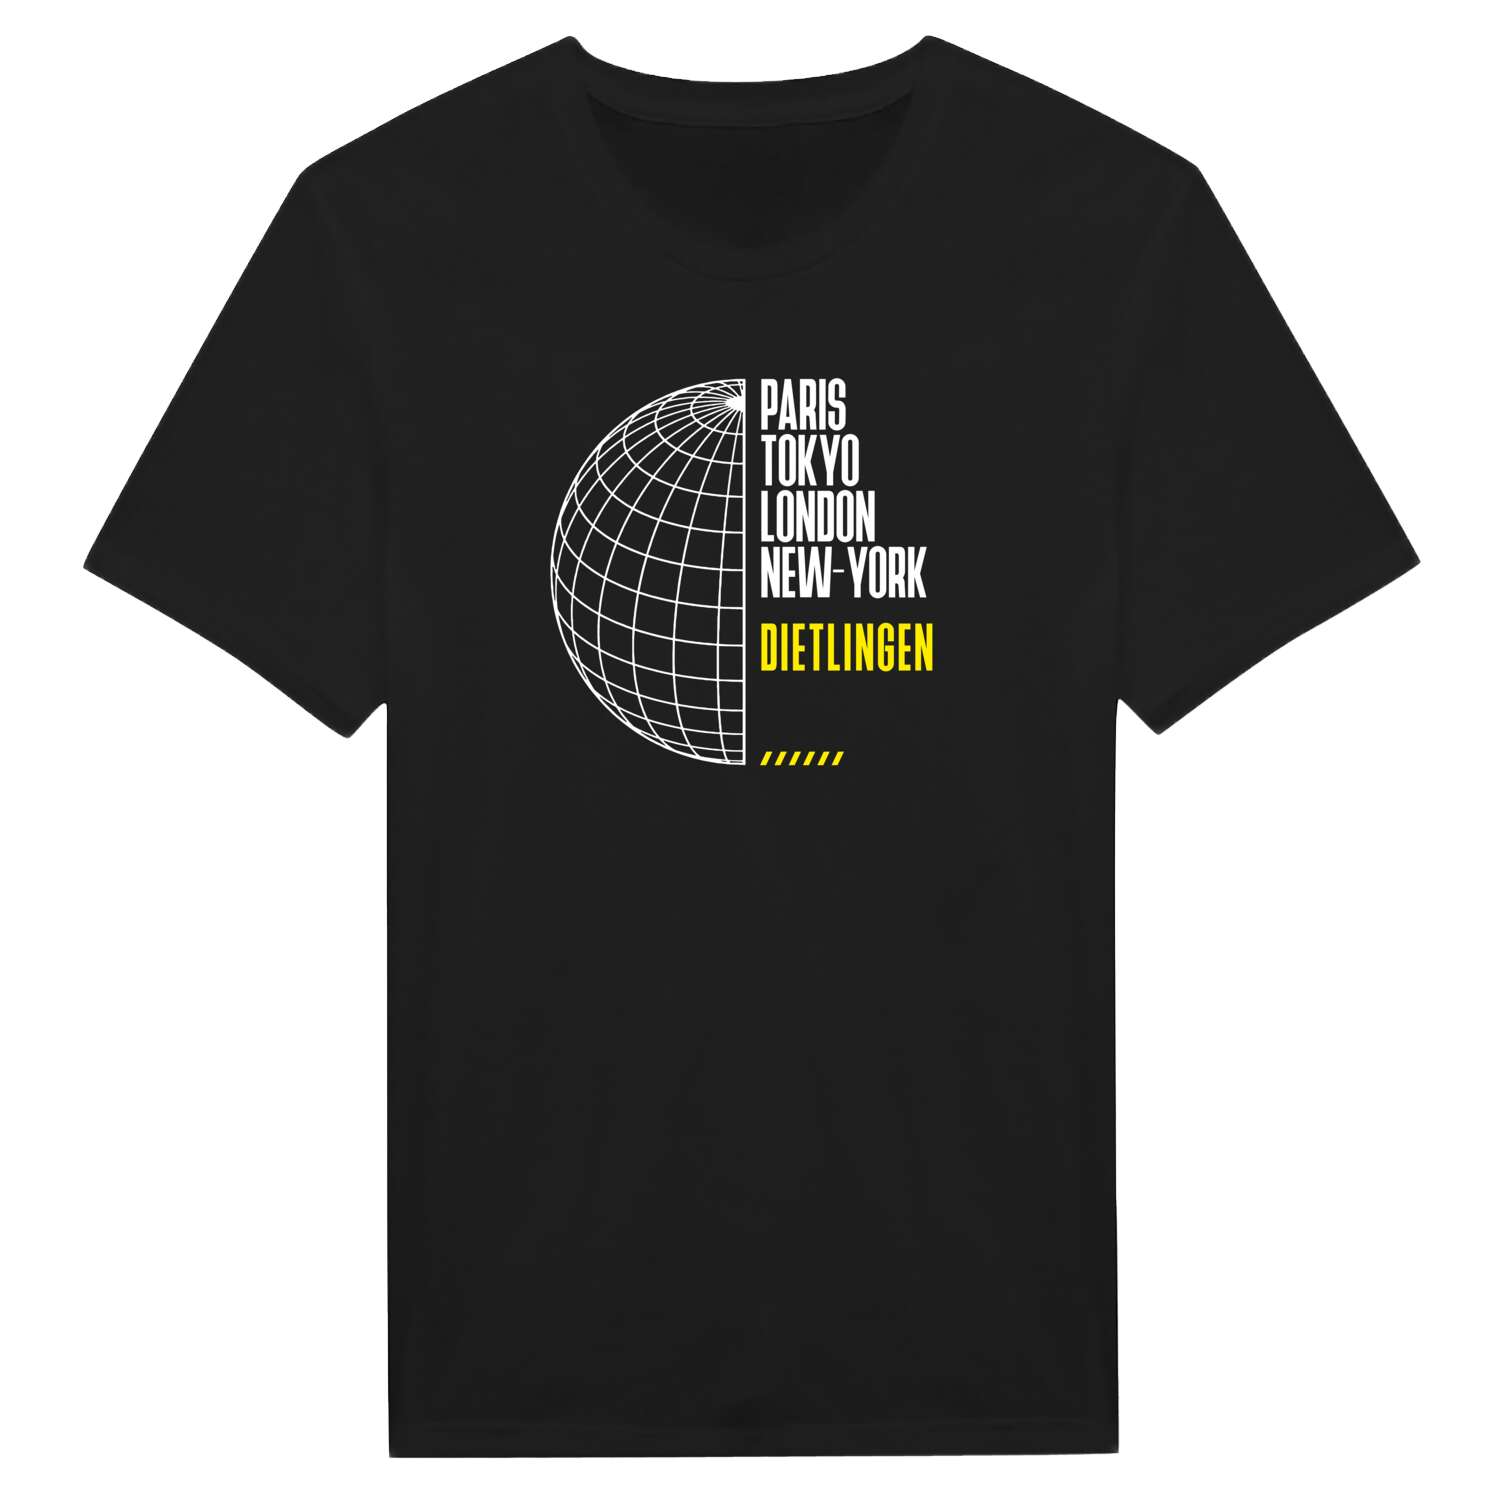 Dietlingen T-Shirt »Paris Tokyo London«